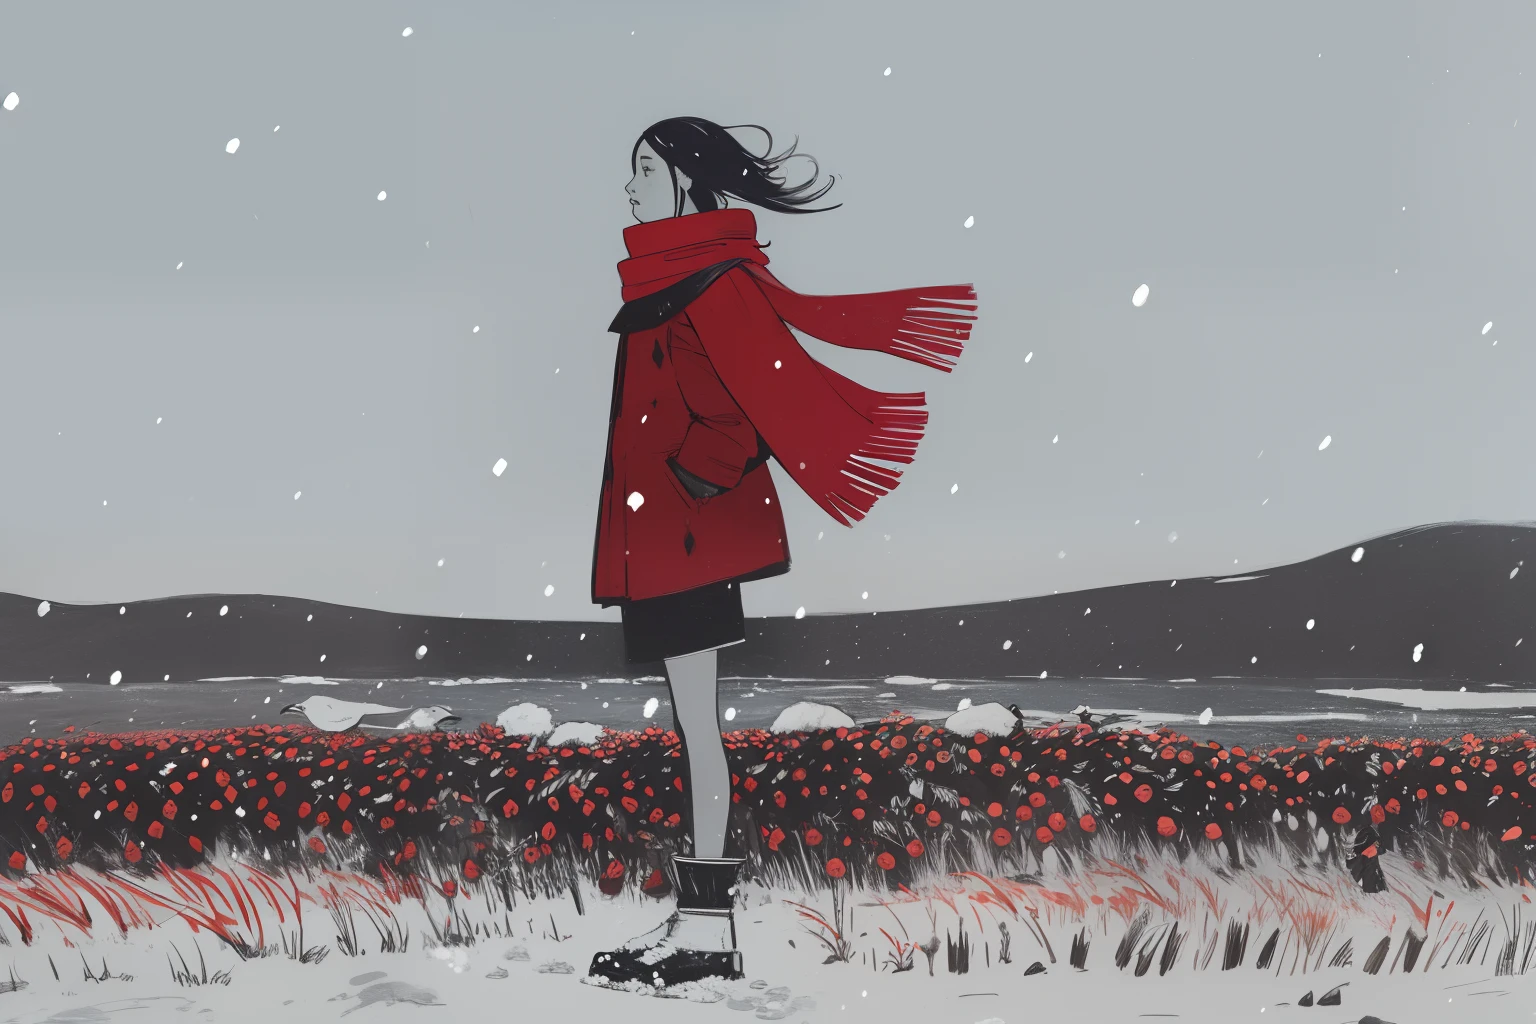 (tribal, Ethnique, Inuits autochtones), 1fille, red scarf on vent, debout, hiver, tempête de neige, vent, fortes chutes de neige, toundra, le marais, baies rouges, gris, blanc, sombre, nuit, oiseaux géants dans le ciel,  esquisser